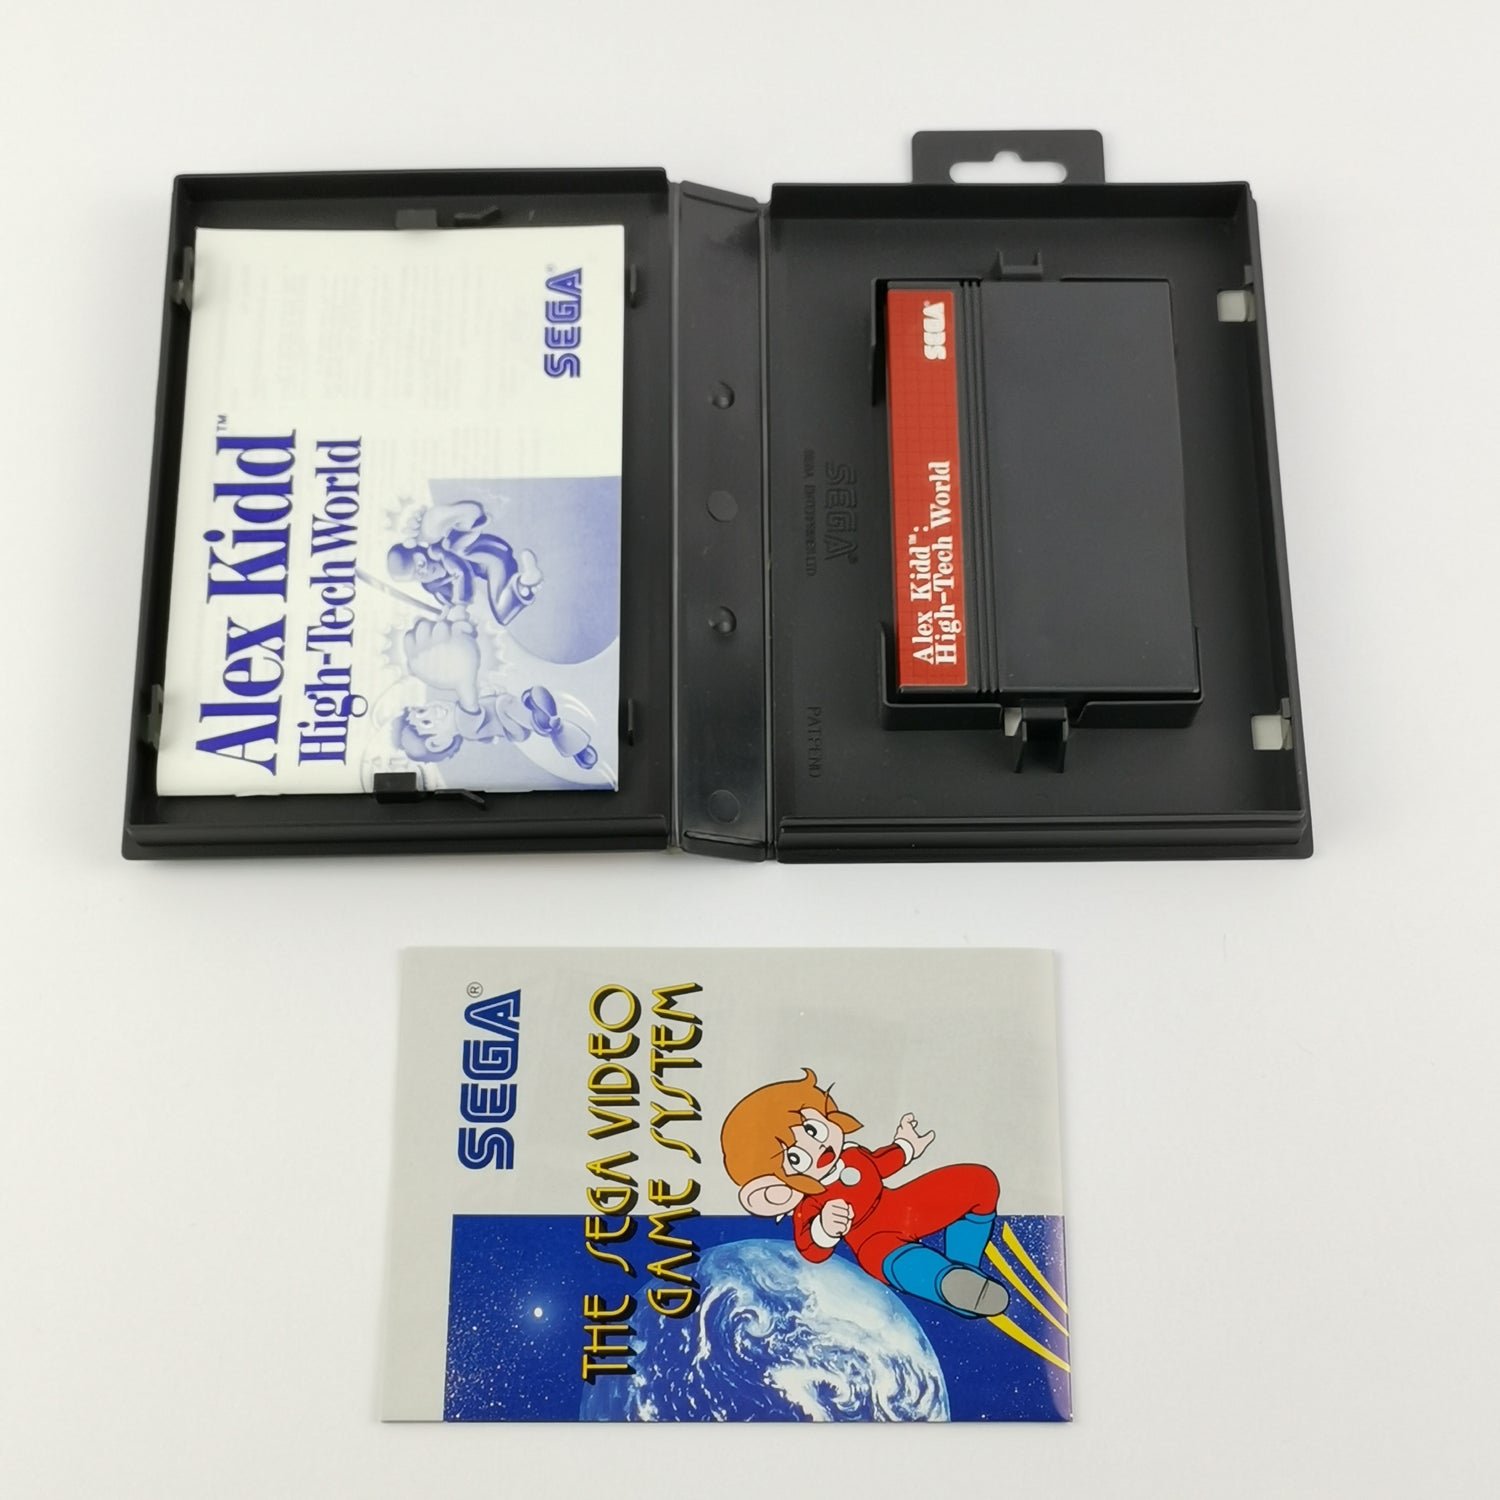 Sega Master System Spiel : Alex Kidd High-Tech World - OVP Anleitung PAL MS